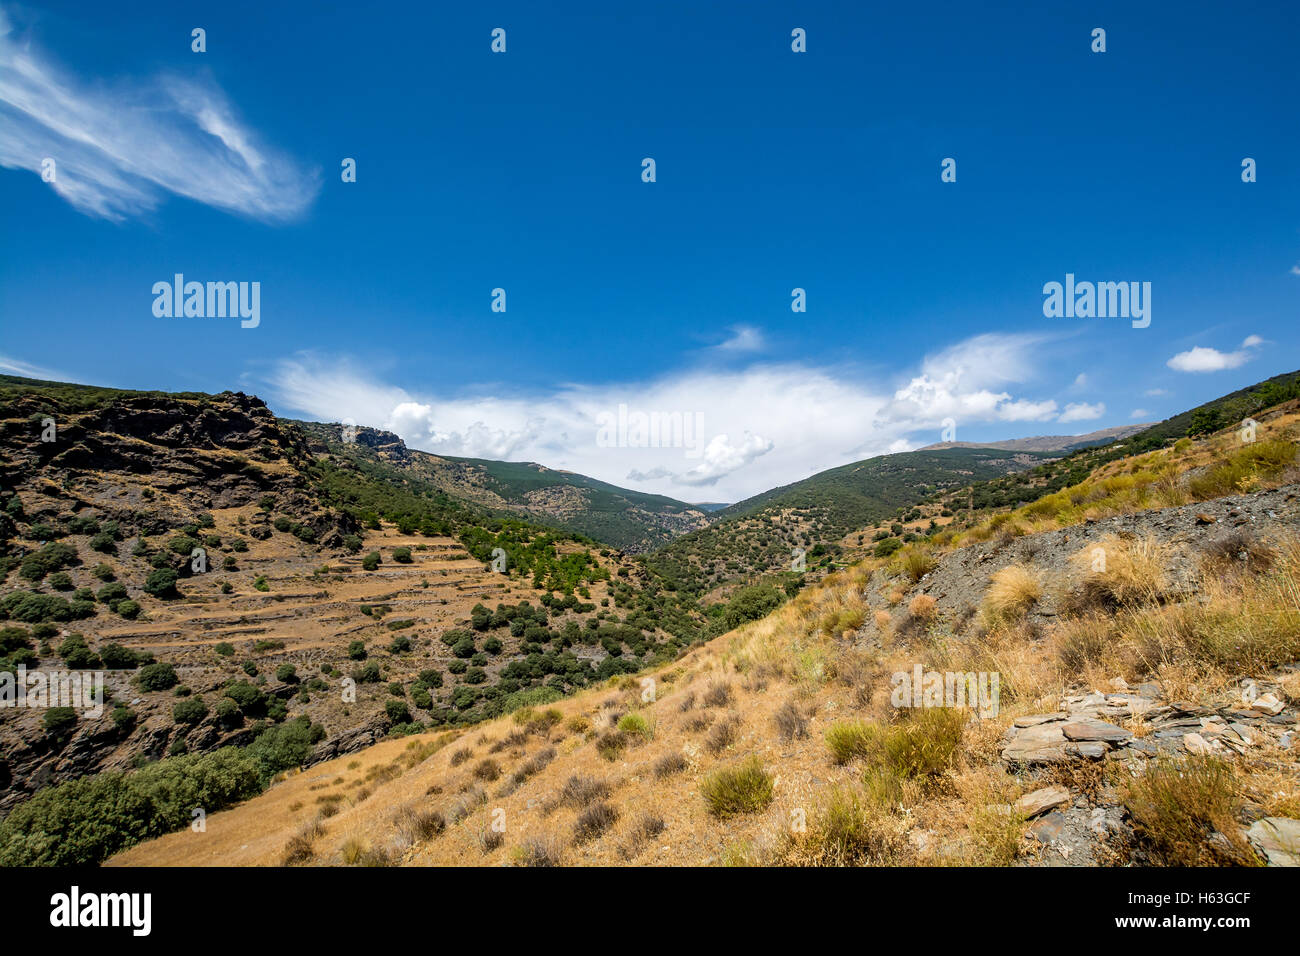 Beeindruckende Landschaft der Sierra Nevada, Region Alpujarra/Almeria, Spanien Stockfoto